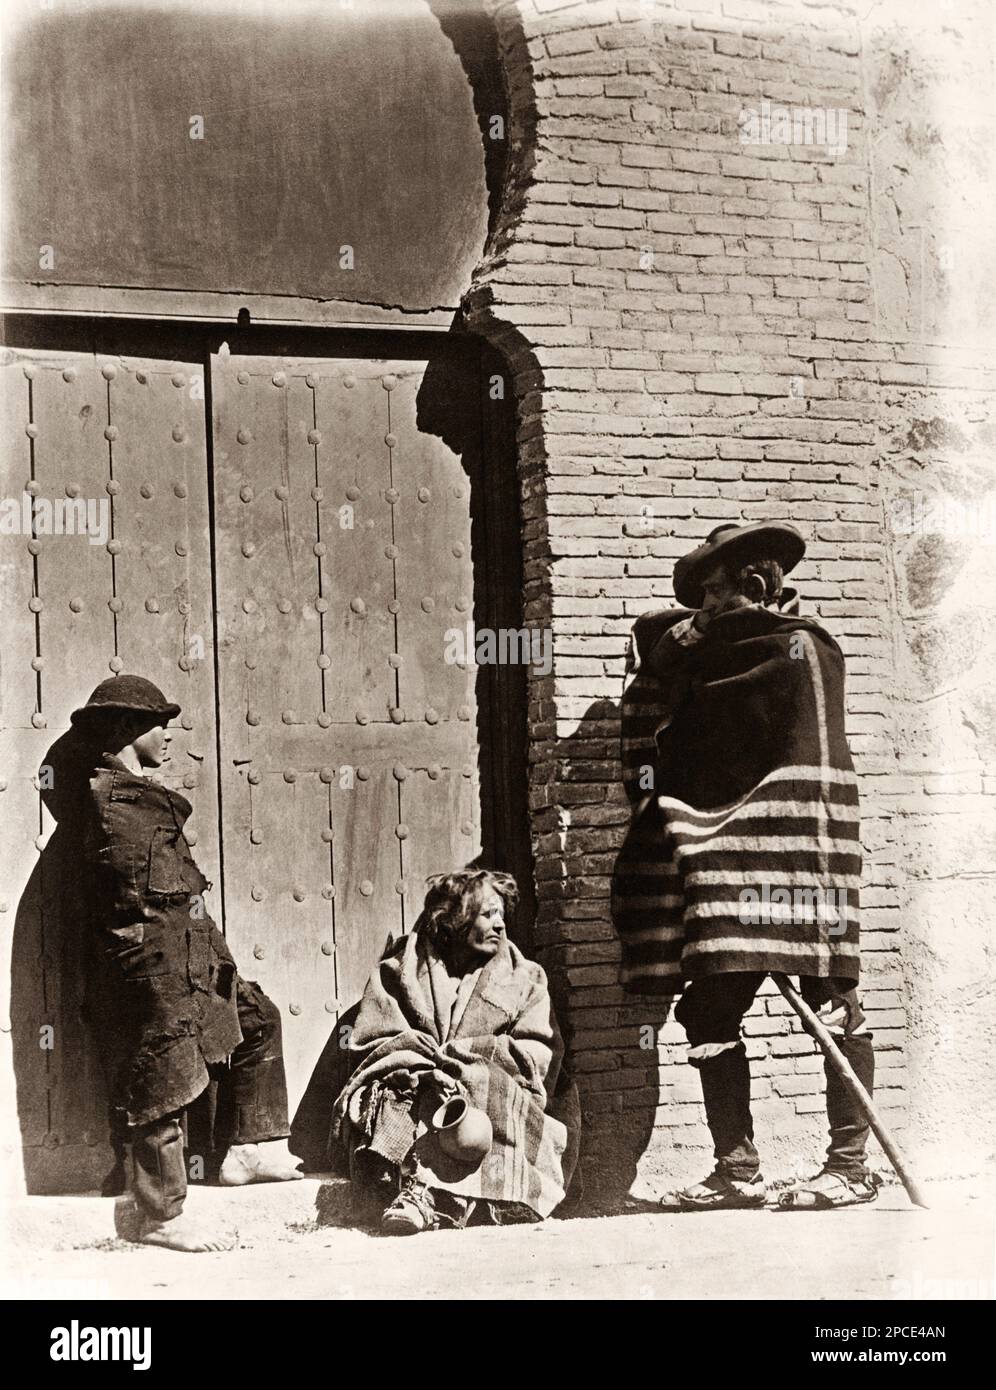 1880 CA, TOLÈDE, ESPAGNE : mendiants à la porte d'un couvent . Photo de J. Laurent , Madrid - SPAGNA - FOTO STORICHE - PHOTOS D'HISTOIRE - FOLKLORE - - GEOGRAFIA - GÉOGRAPHIE - OTTOCENTO - XIX SIÈCLE - 800 - mendicanti alla porta di un convento - povero - poveri - poors - mendiants --- Archivio GBB Banque D'Images